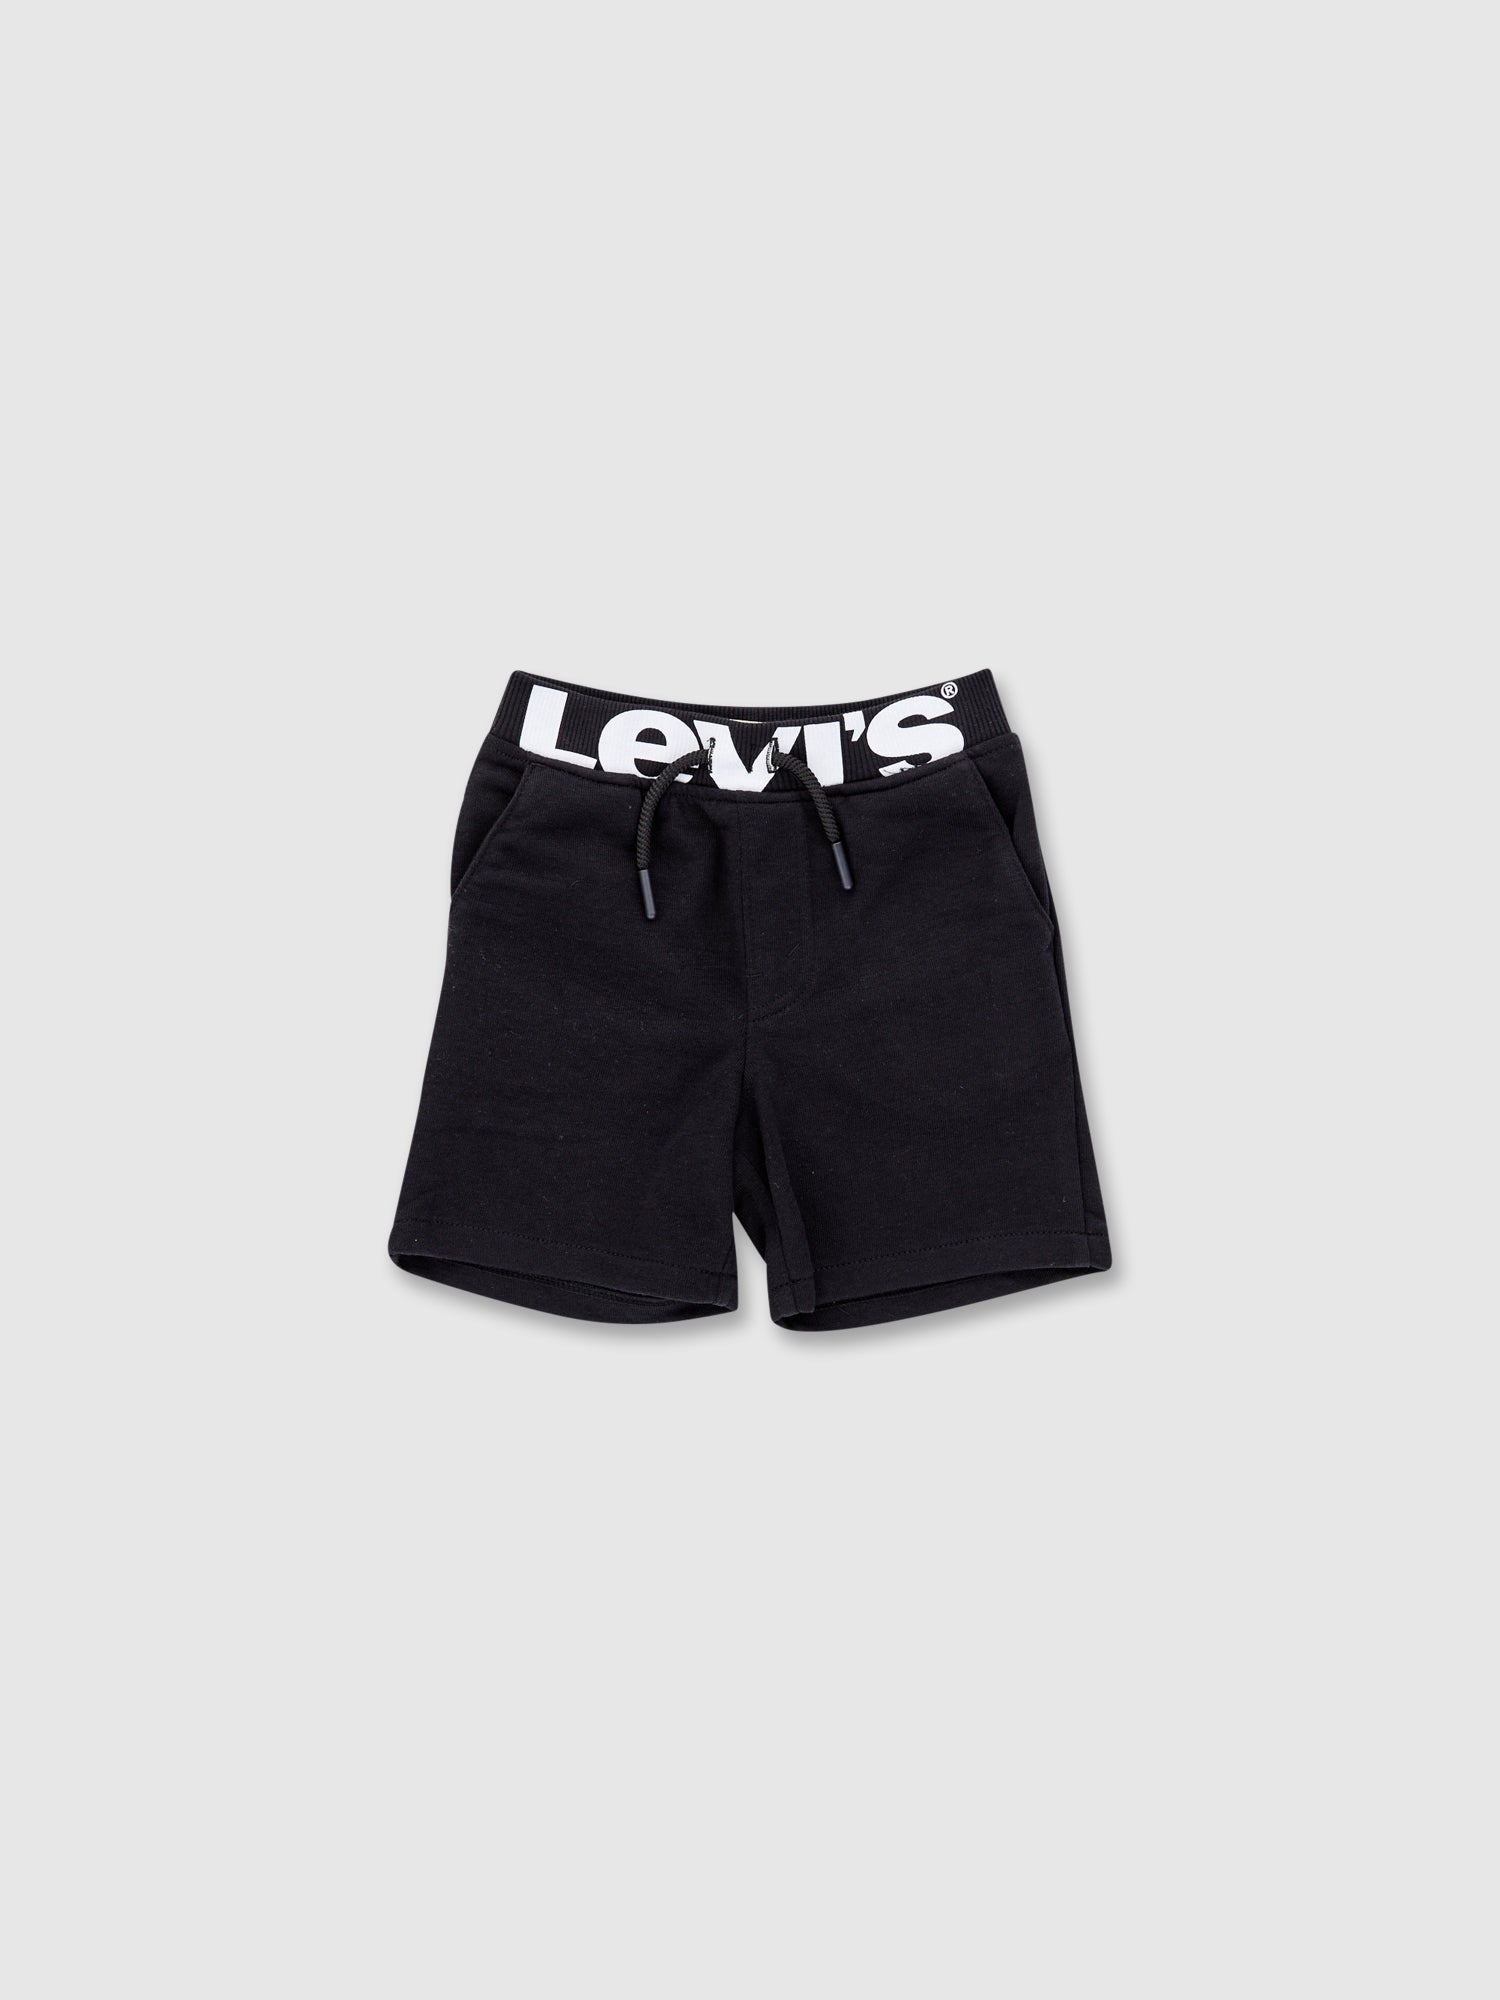 מכנסיים קצרים עם לוגו / ילדים- Levi's|ליוויס